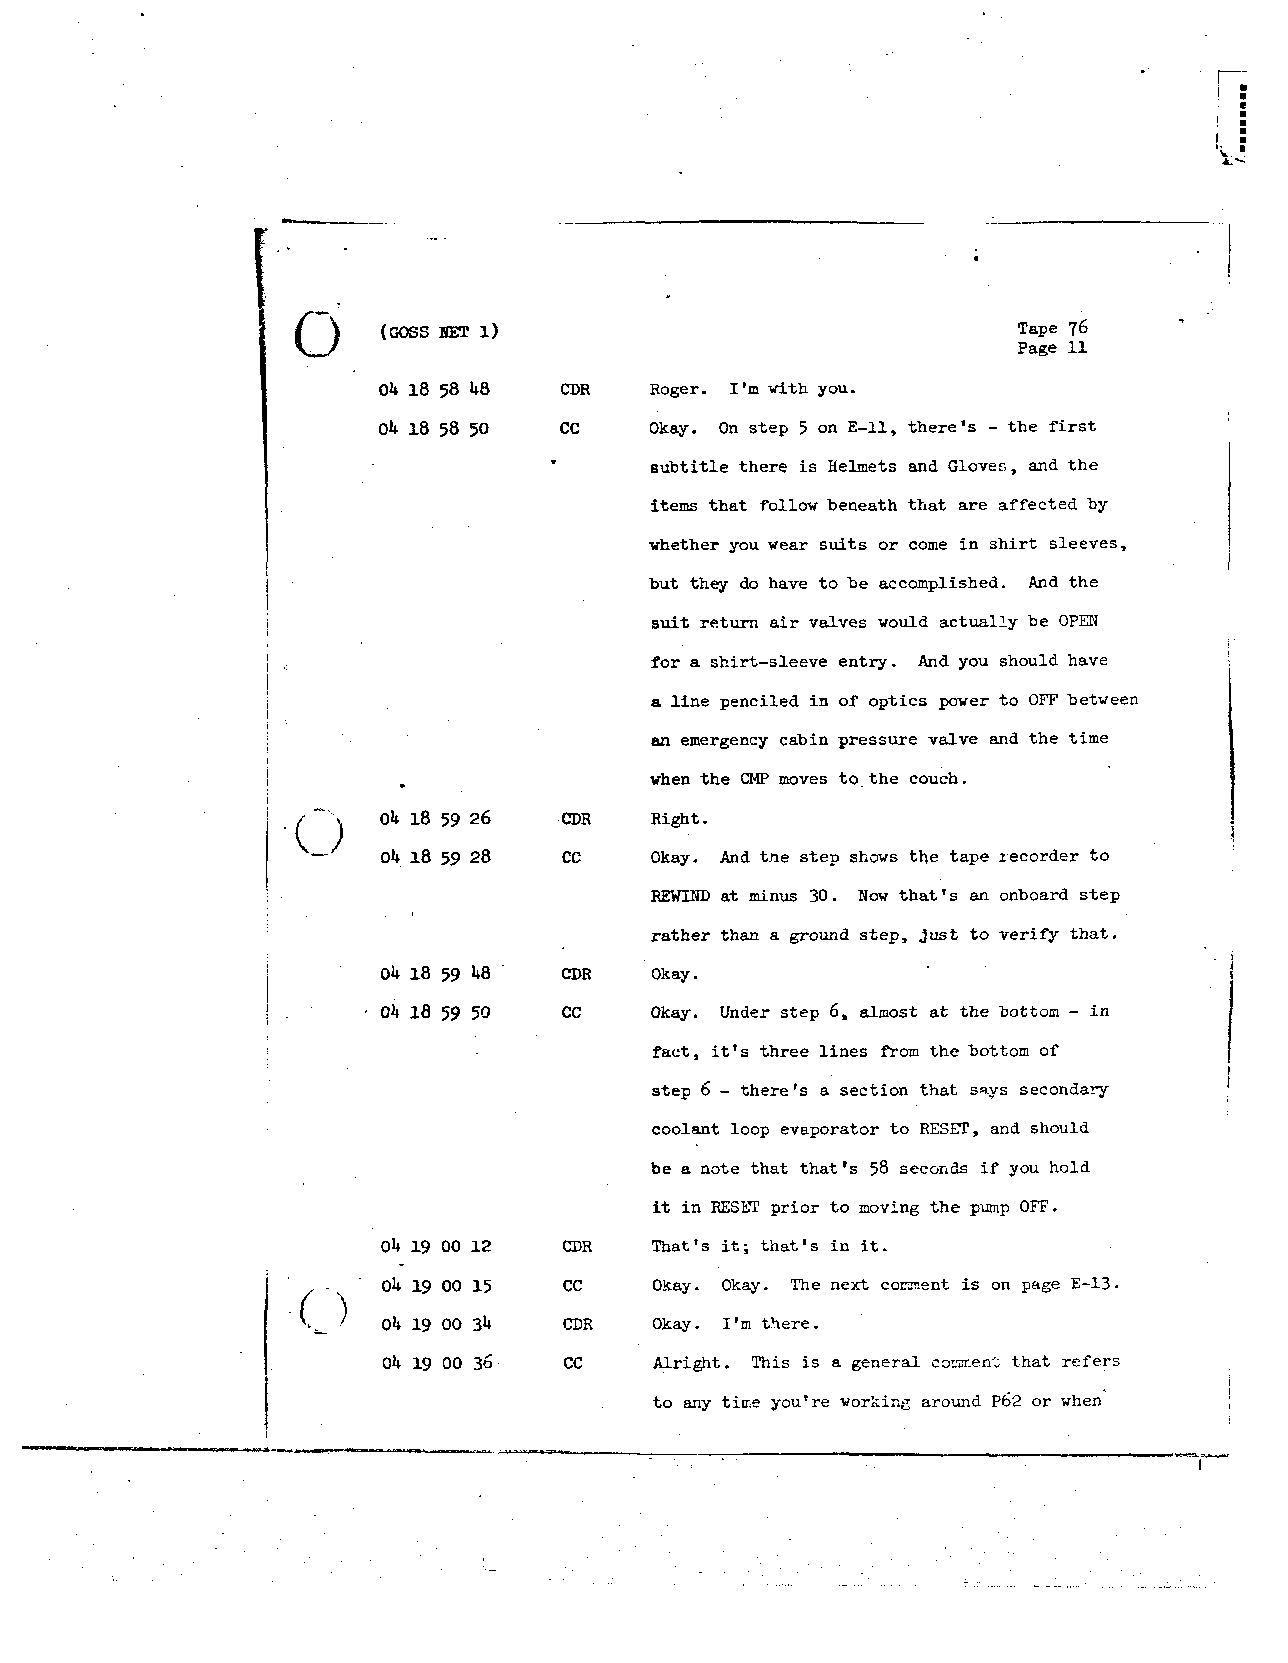 Page 619 of Apollo 8’s original transcript